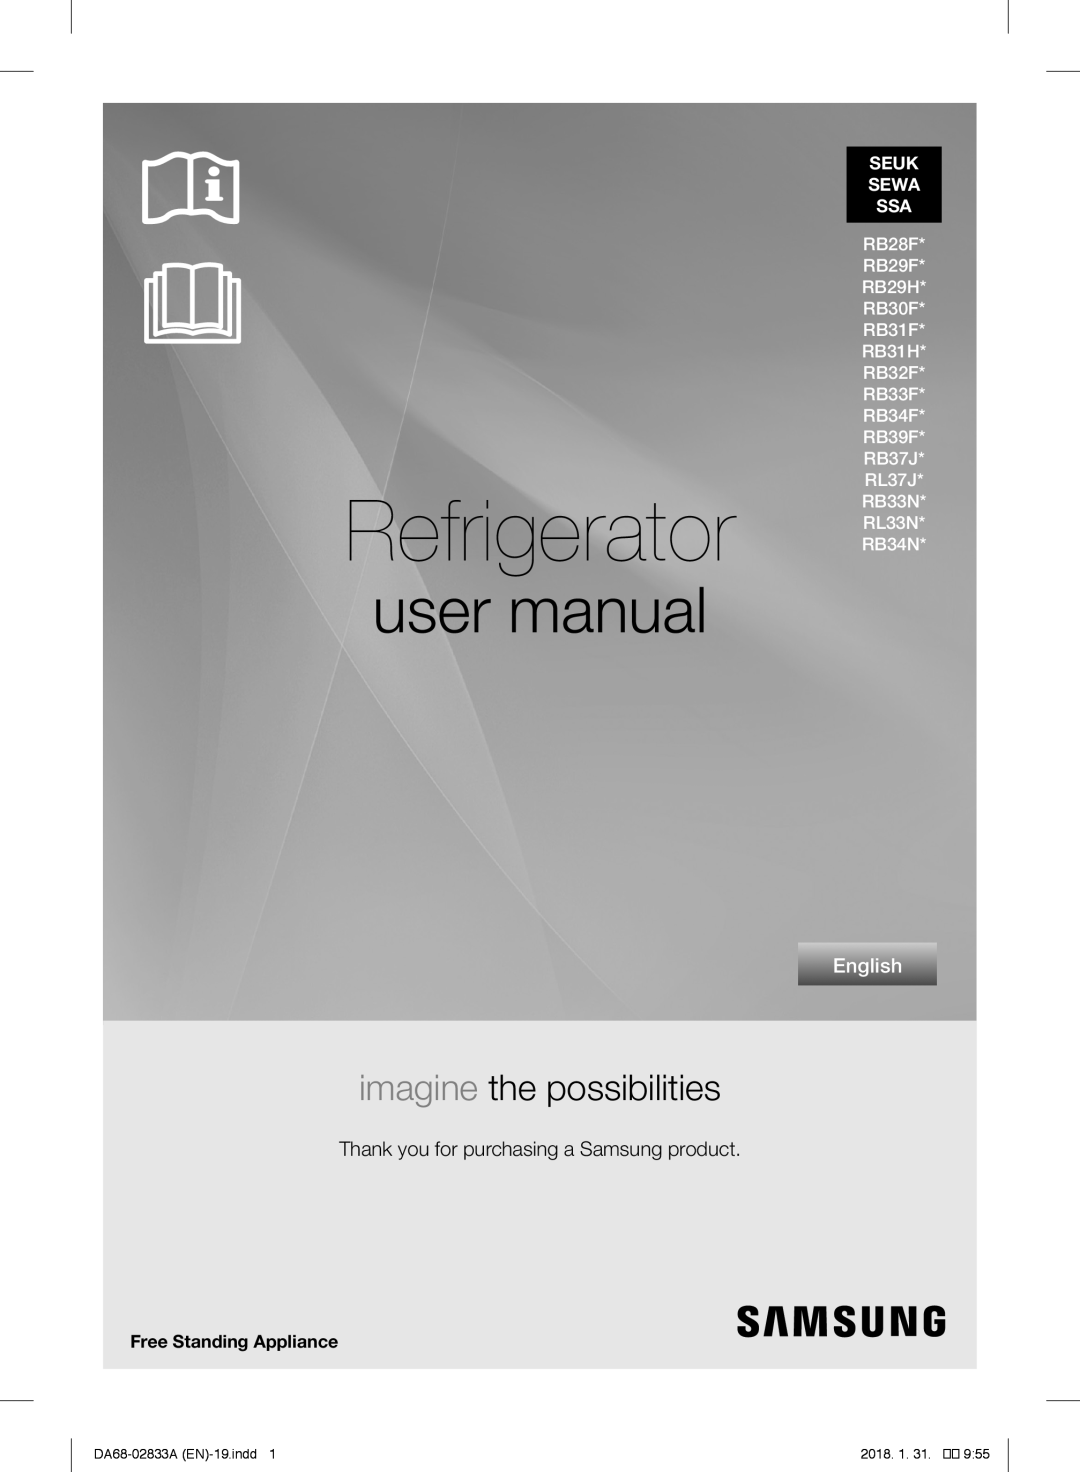 Samsung RL29FEJNBSS/EG manual Frigorifero, manuale utente, immagina le possibilità, Italiano, DA68-02833G IT-20.indd, 1116 